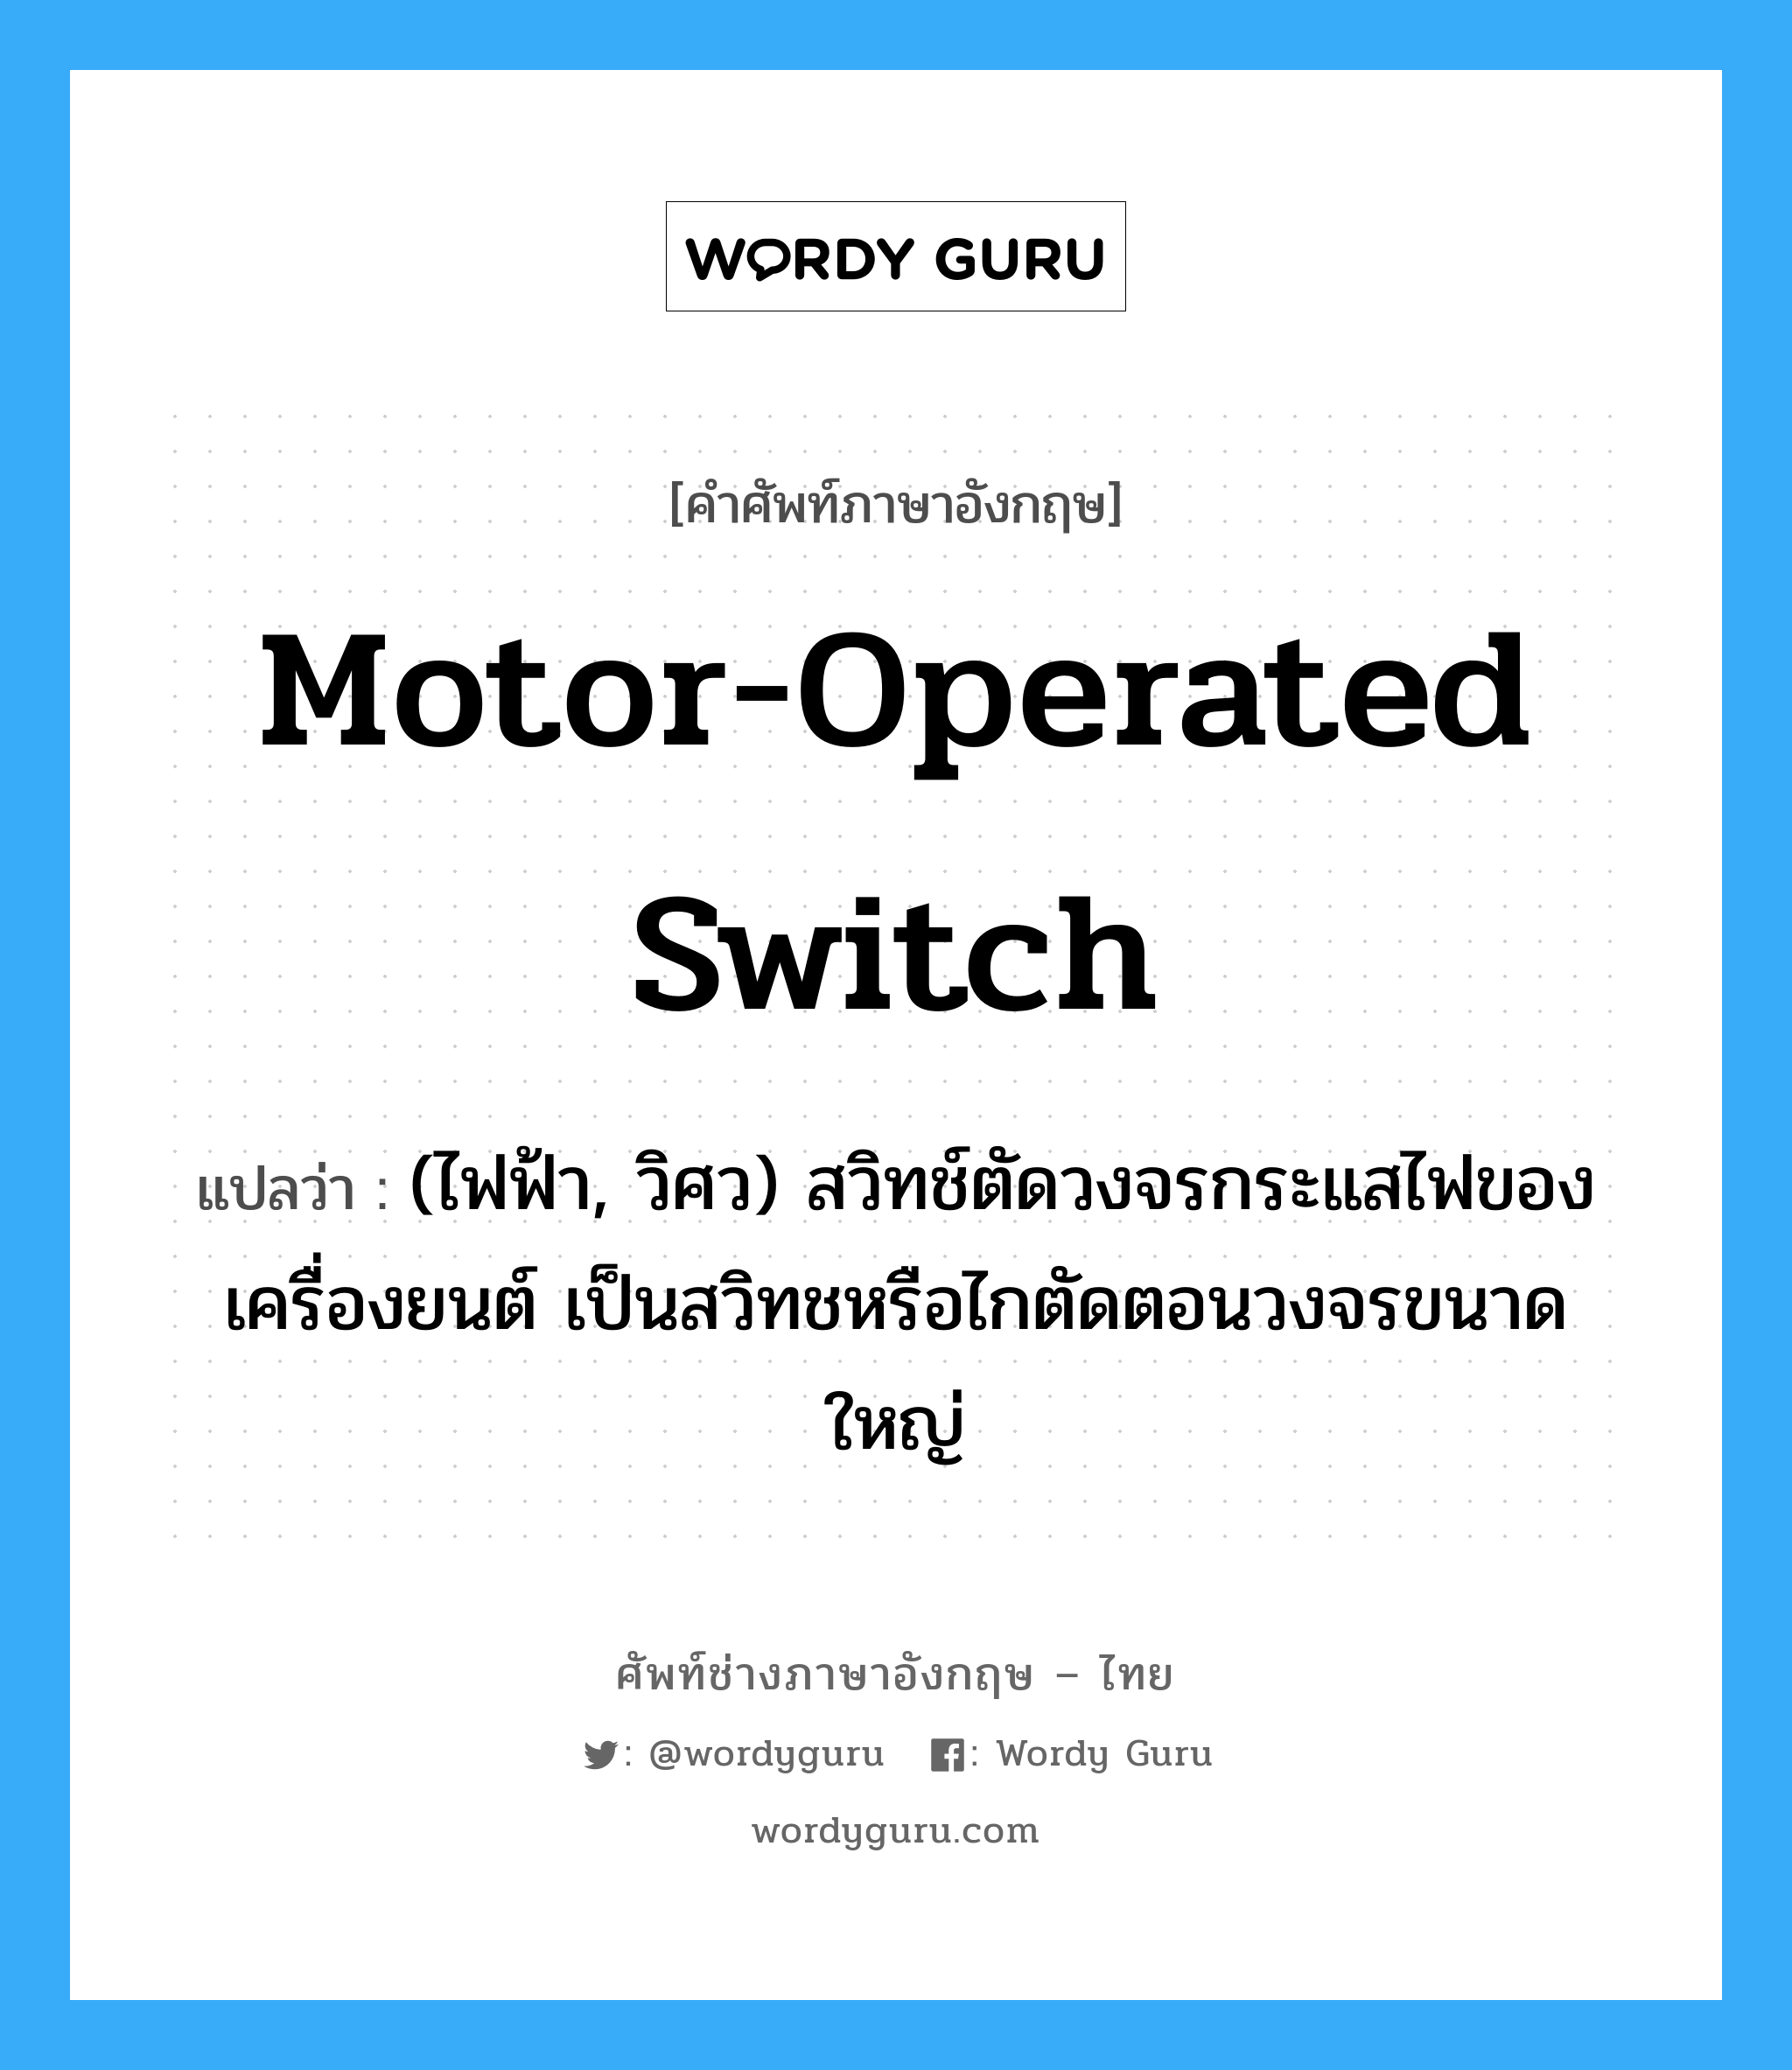 motor-operated switch แปลว่า?, คำศัพท์ช่างภาษาอังกฤษ - ไทย motor-operated switch คำศัพท์ภาษาอังกฤษ motor-operated switch แปลว่า (ไฟฟ้า, วิศว) สวิทช์ตัดวงจรกระแสไฟของเครื่องยนต์ เป็นสวิทชหรือไกตัดตอนวงจรขนาดใหญ่